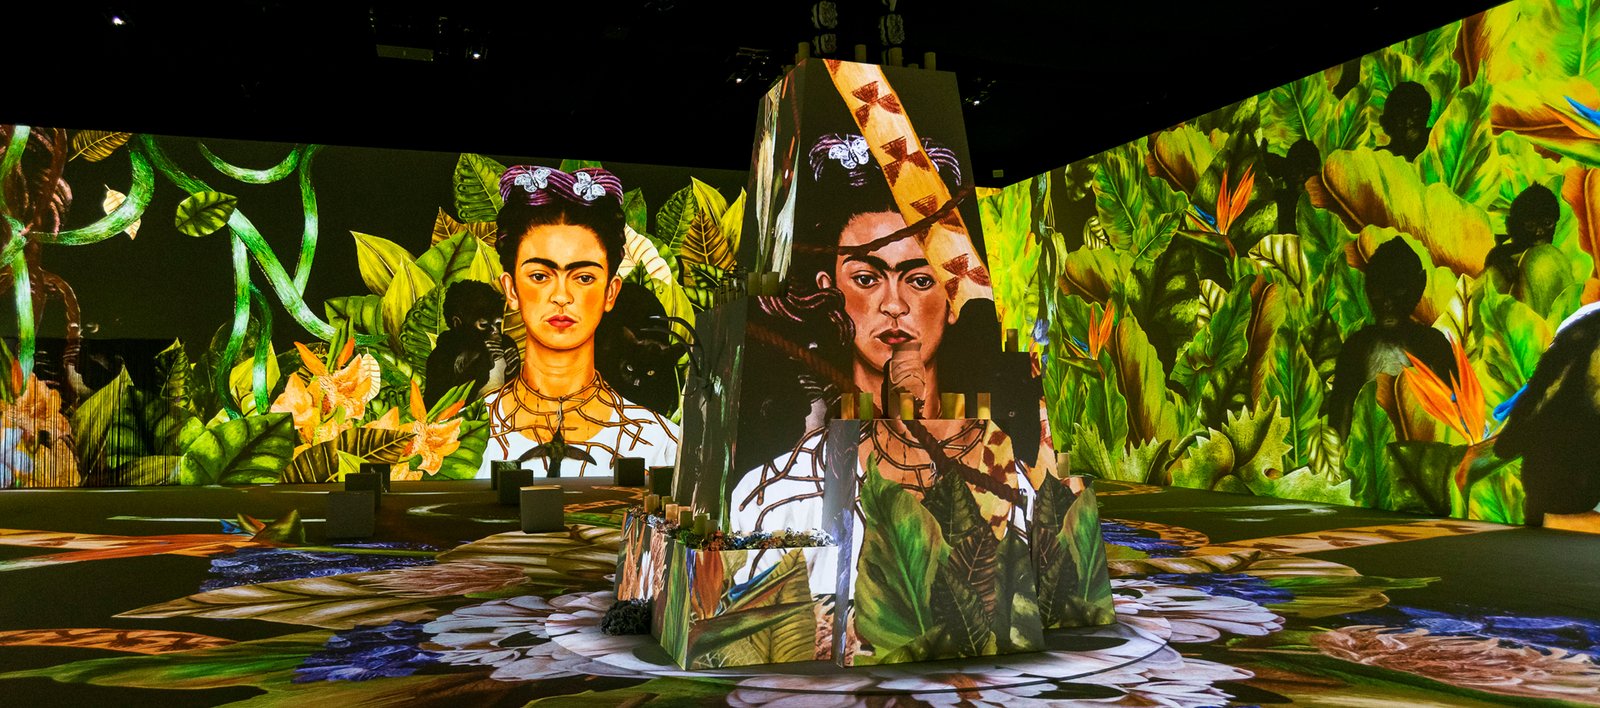 Exposición Frida Kahlo en Buenos Aires